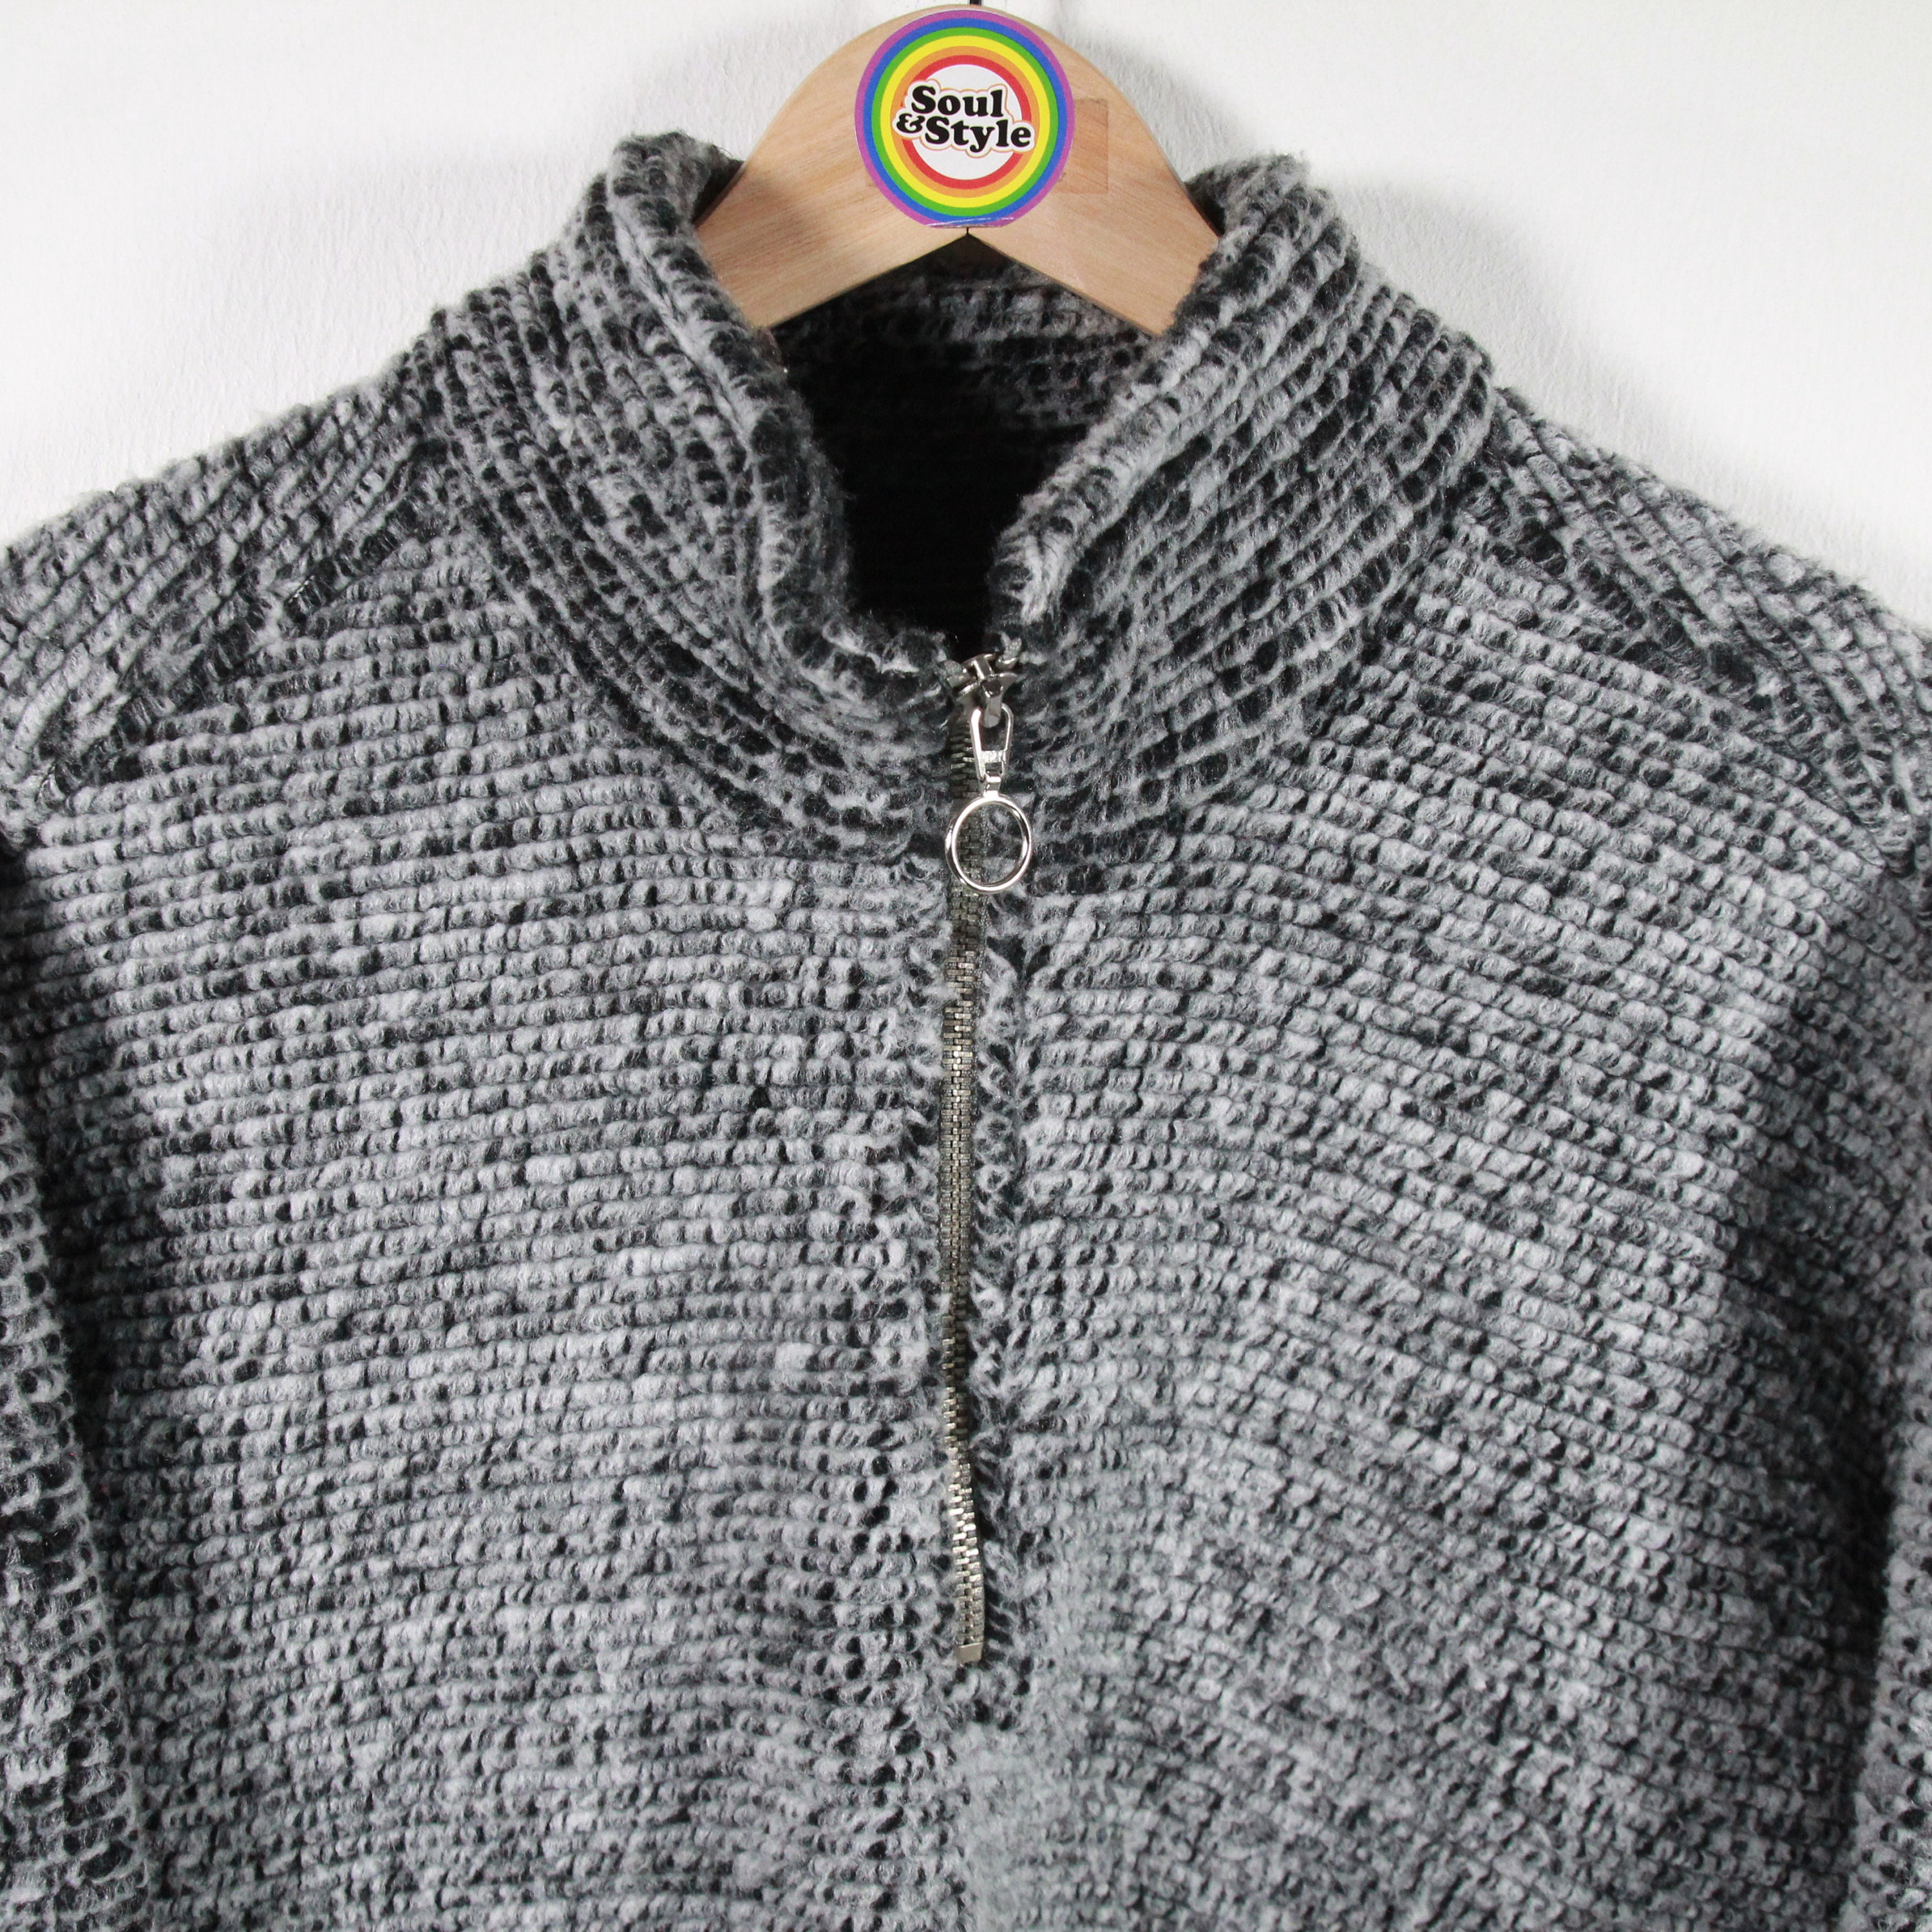 Vintage 90s Fleece Sweater Size M elviana Sportswear